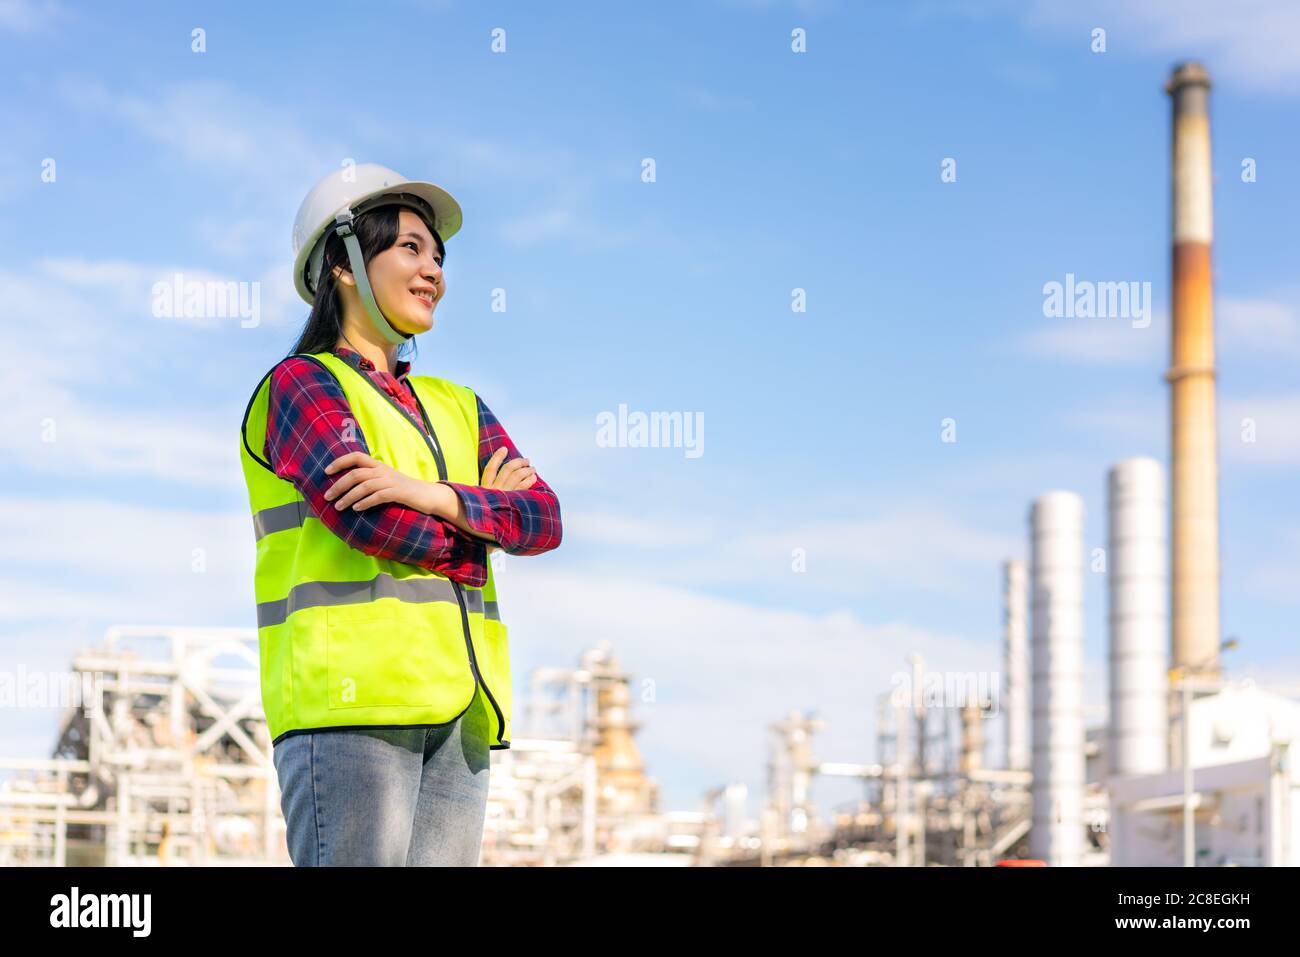 Asiatische Frau Ingenieur Arm gekreuzt und lächeln mit zuversichtlich, die Zukunft mit Ölraffinerie Fabrik im Hintergrund. Stockfoto